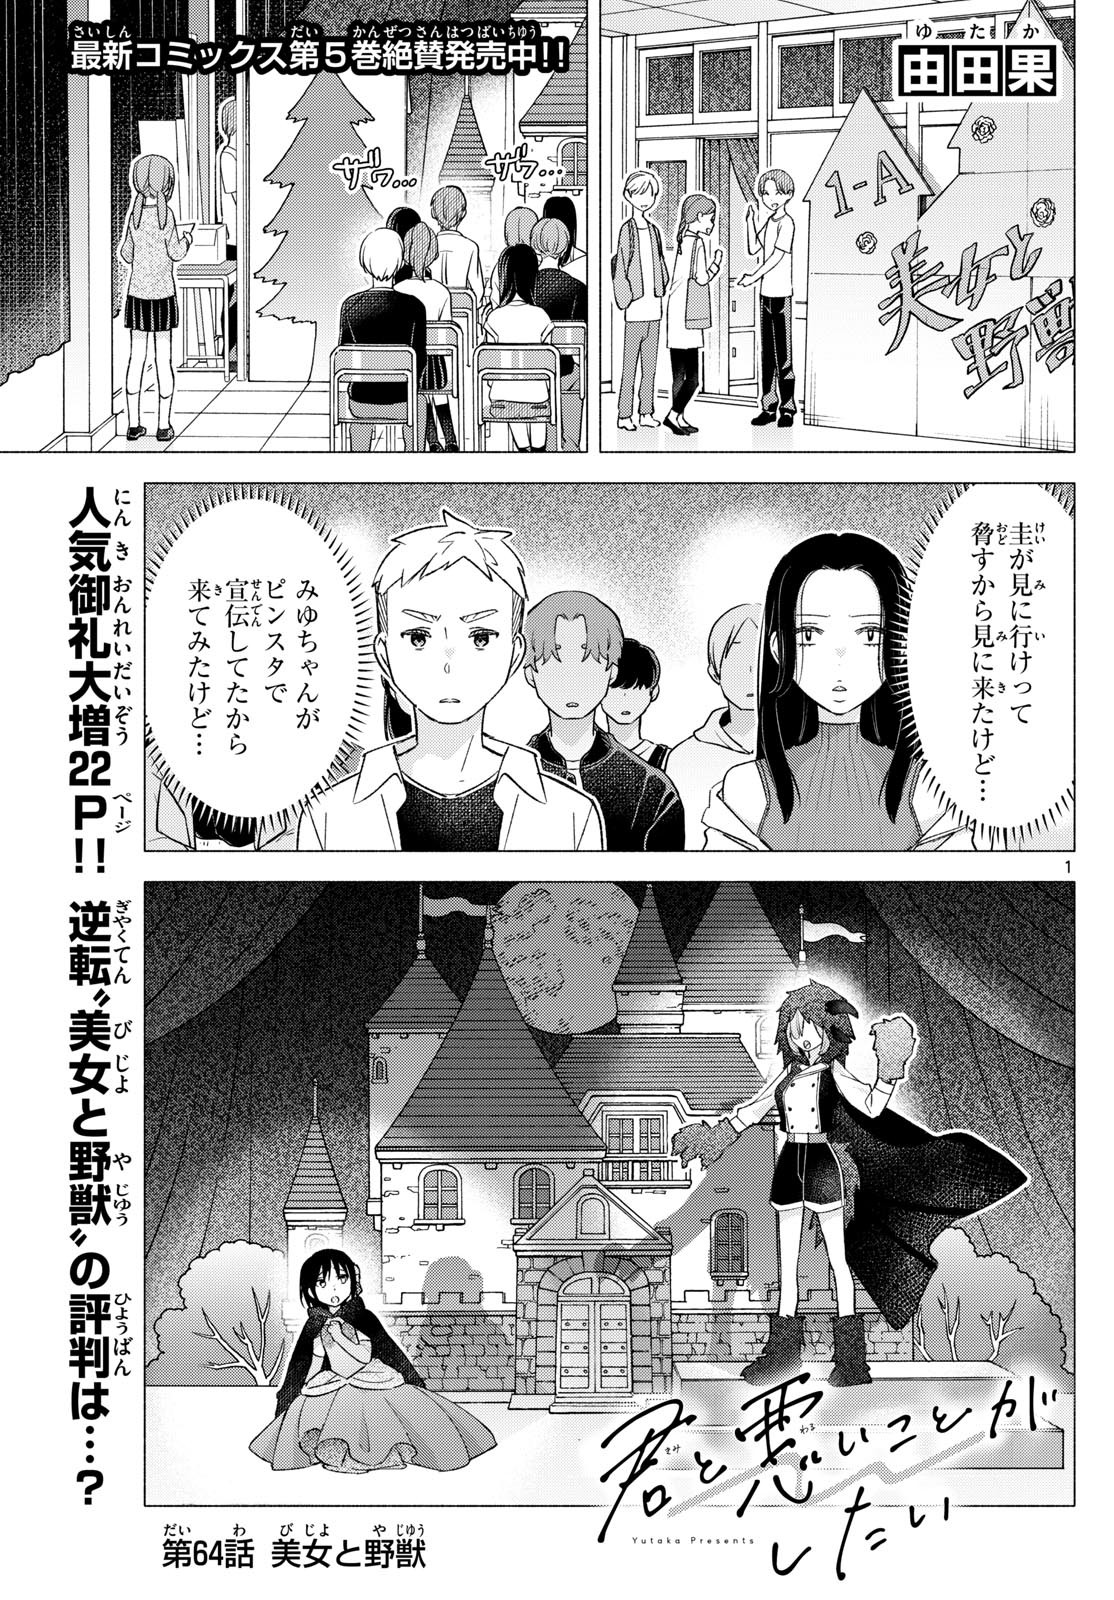 Kimi to Warui Koto ga Shitai - Chapter 064 - Page 1